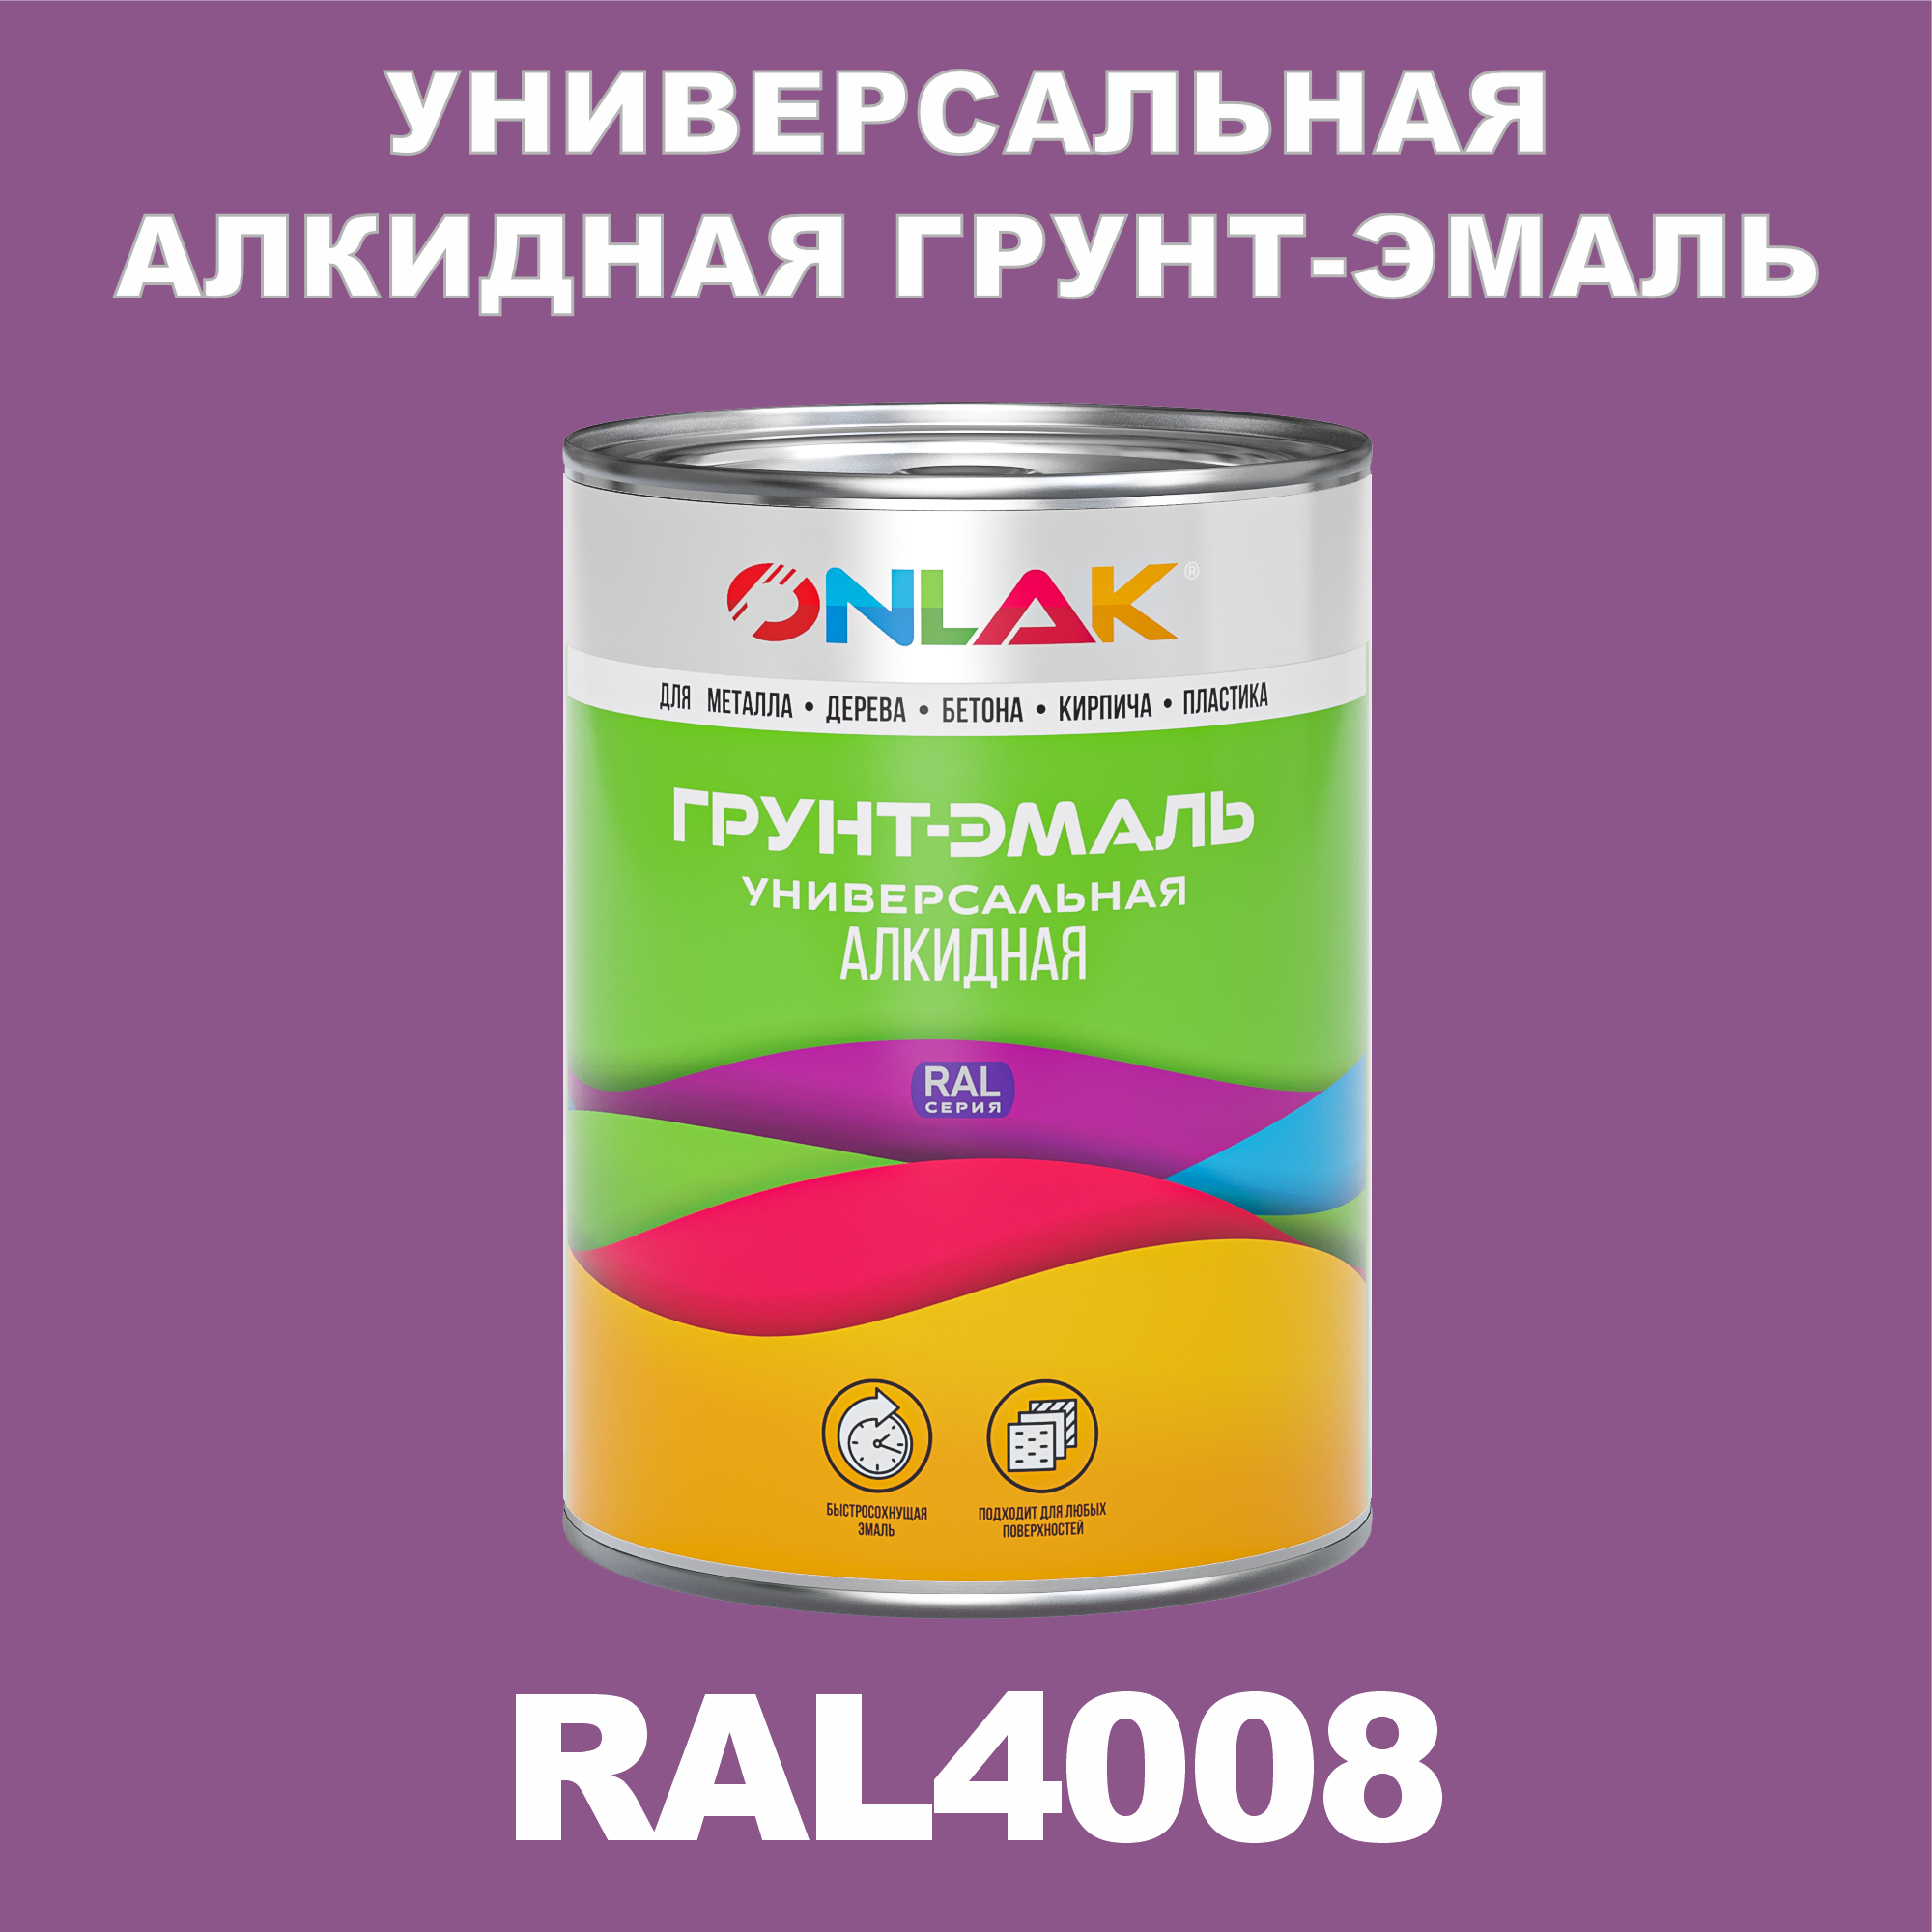 Грунт-эмаль ONLAK 1К RAL4008 антикоррозионная алкидная по металлу по ржавчине 1 кг антикоррозионная грунт эмаль onlak ral 4005 фиолетовый 662 мл